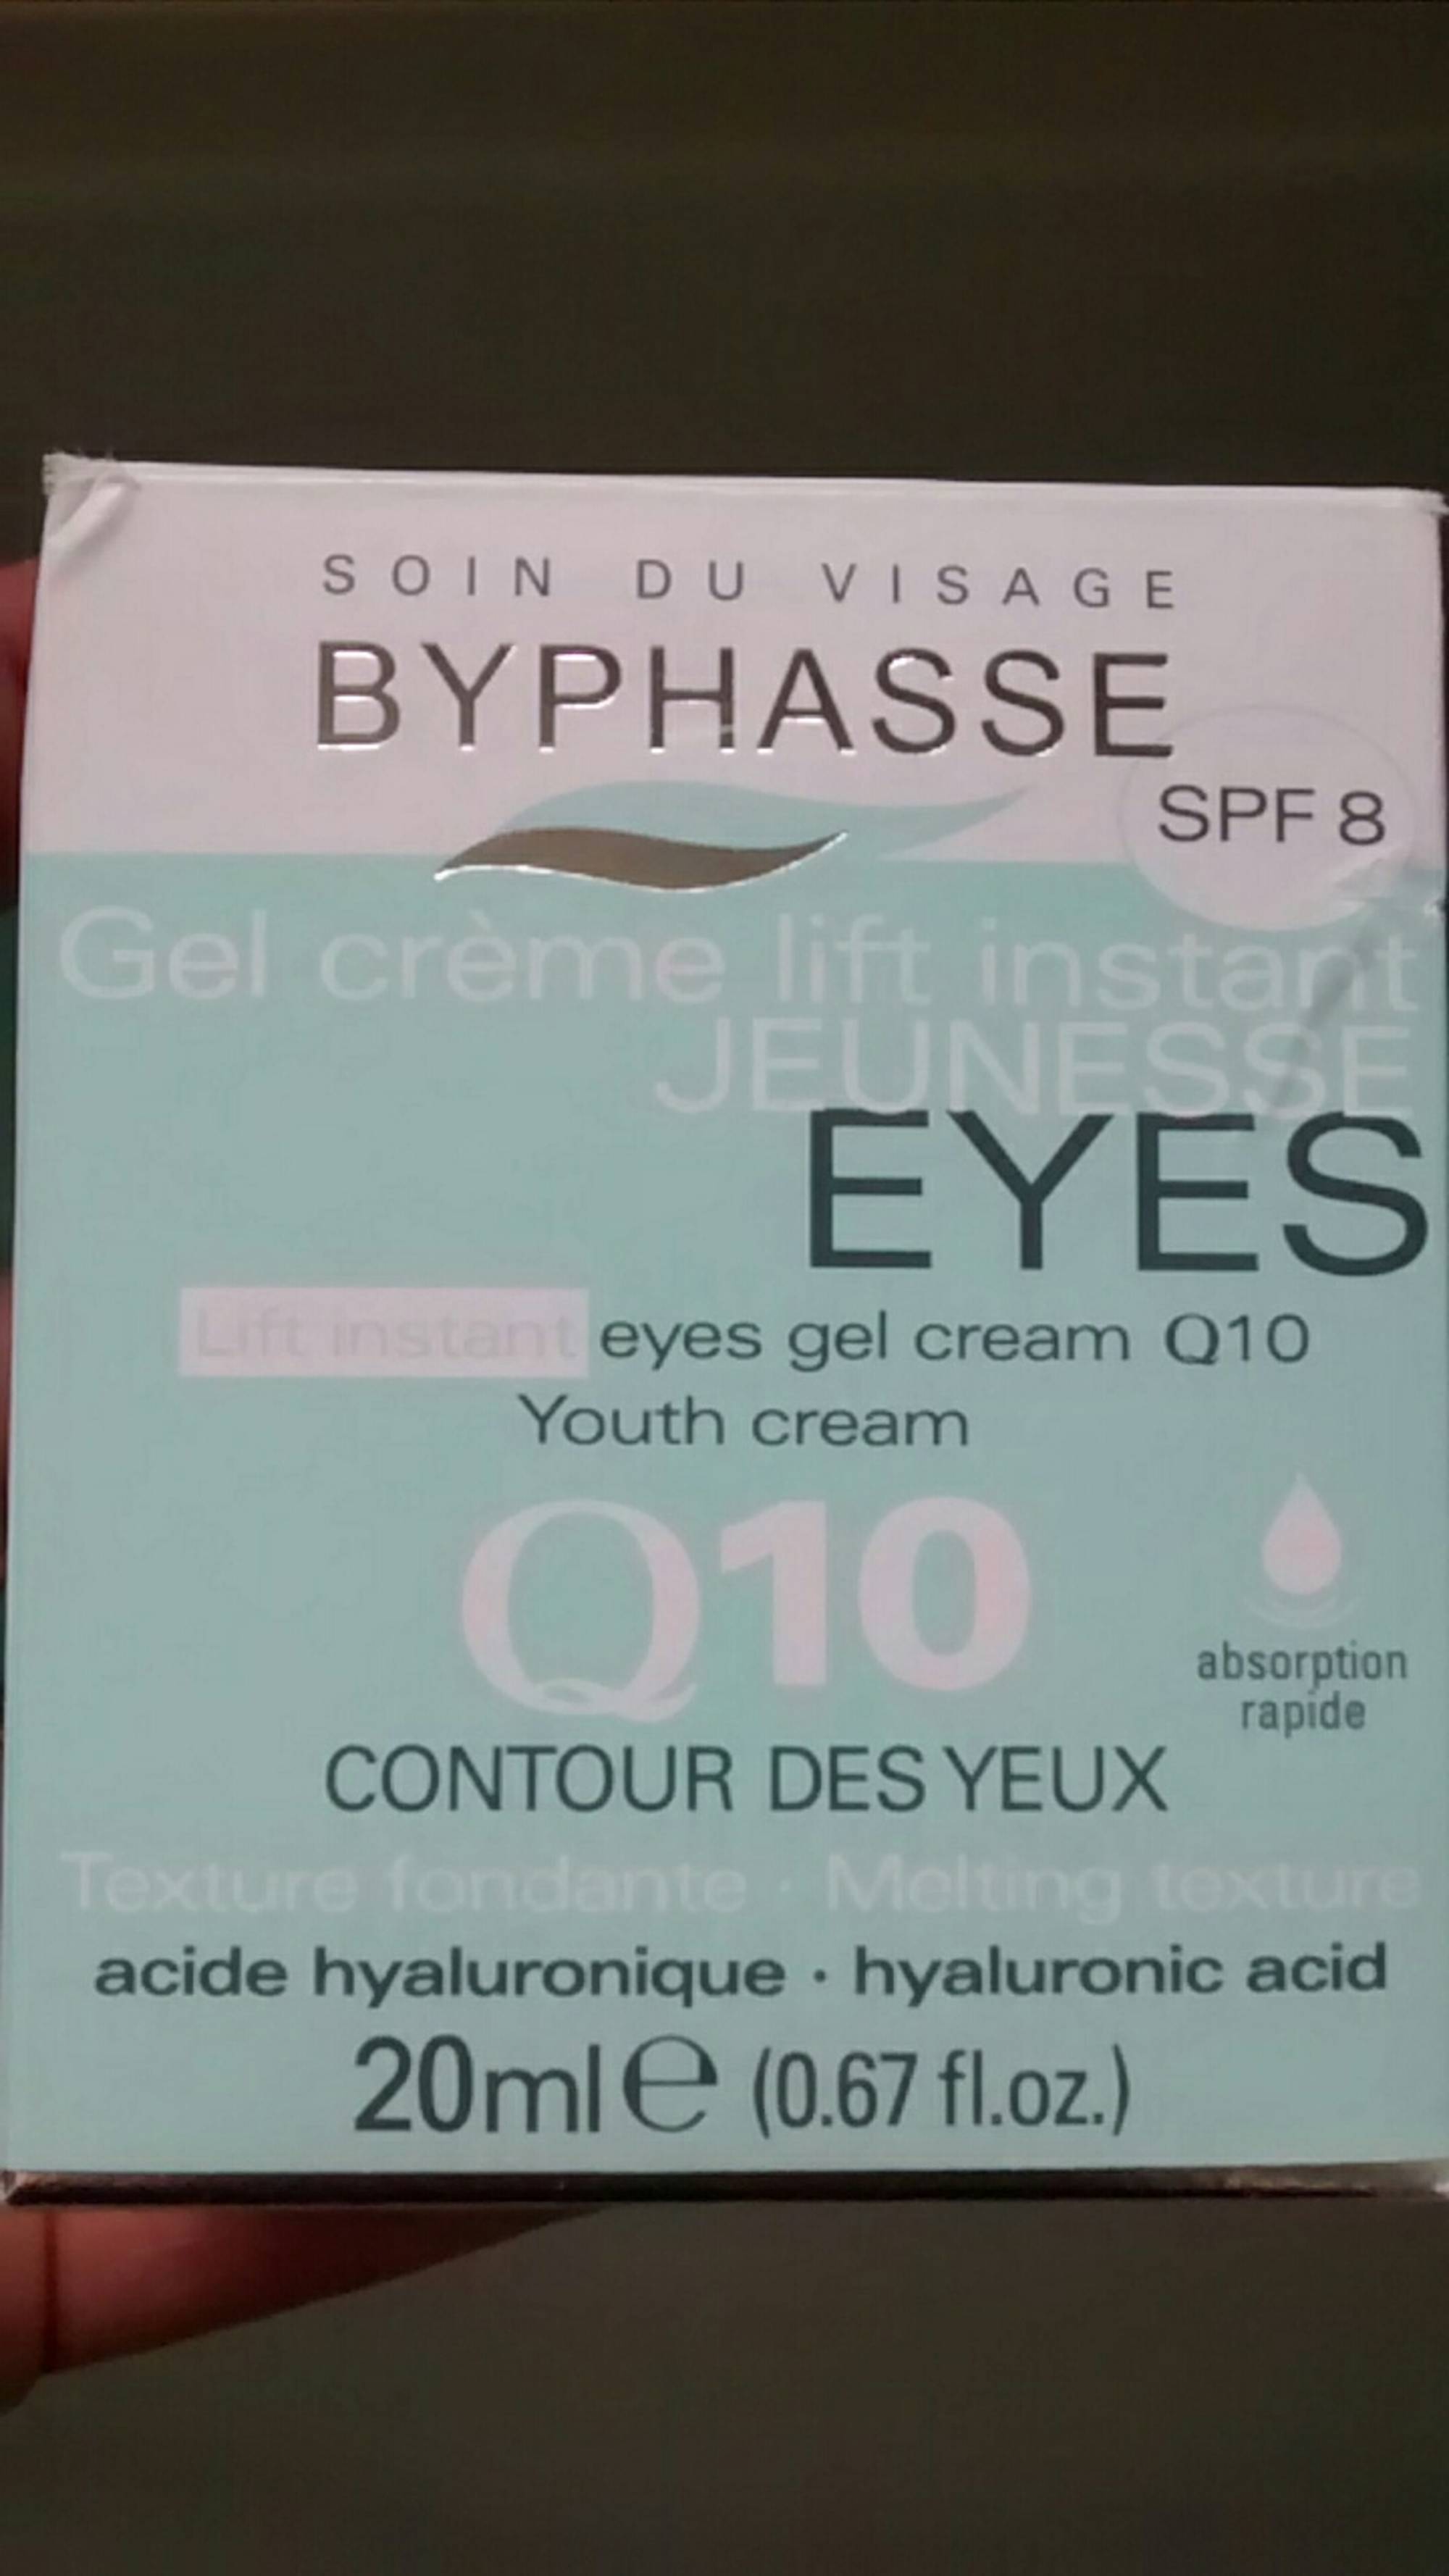 BYPHASSE - Q10 contour des yeux - Gel crème lift instant